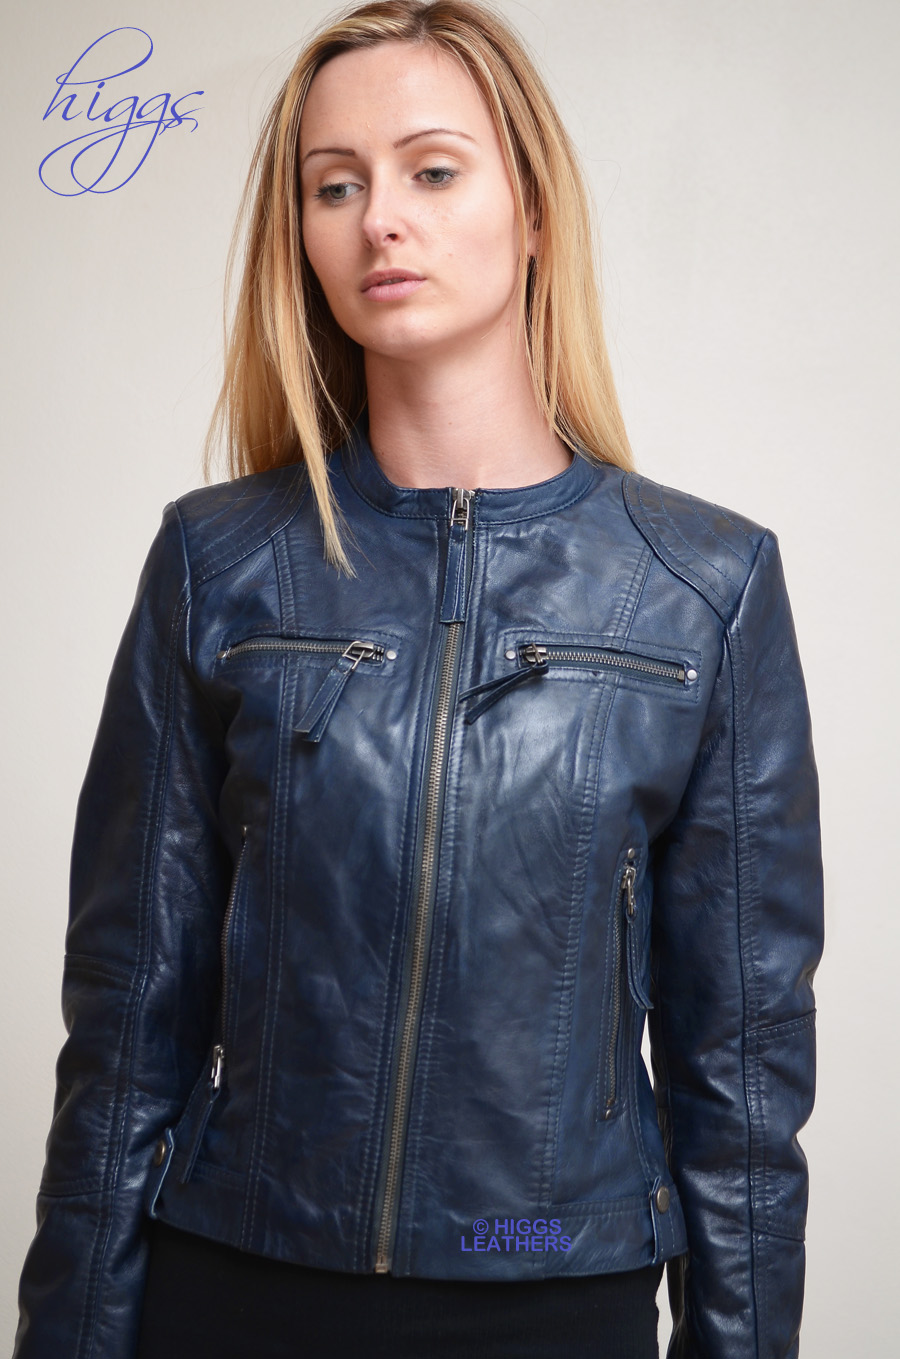 Navy leather jacket uk – Modern fashion jacket photo blog